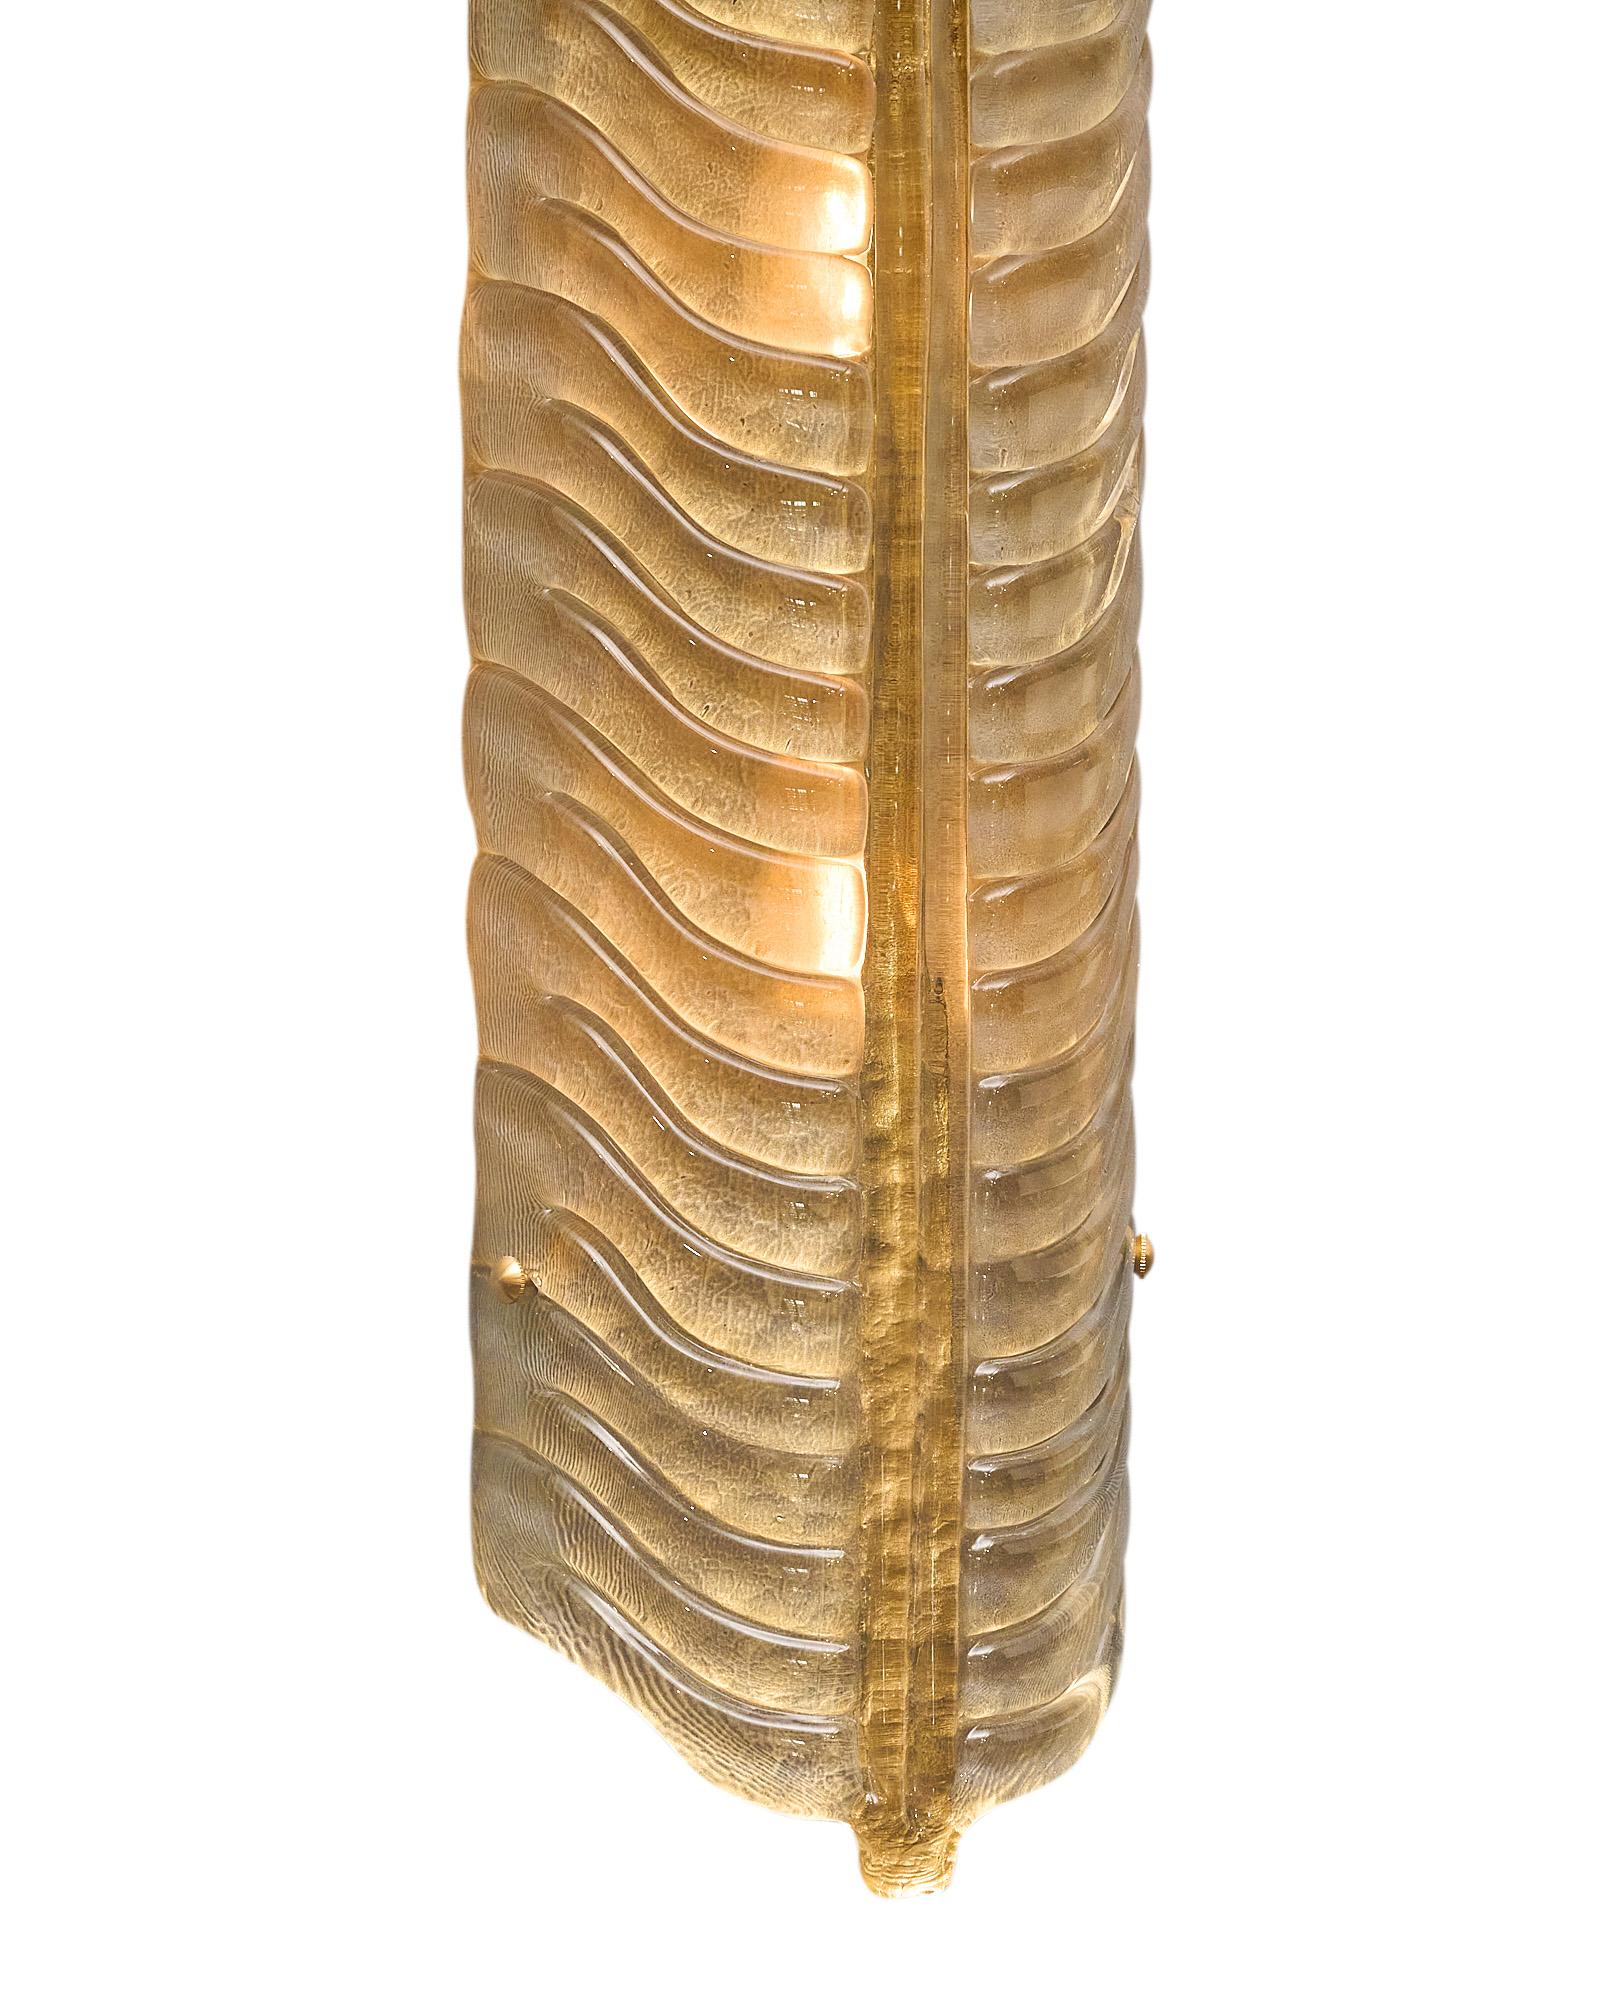 Ein Paar Wandleuchter aus mundgeblasenem Murano-Glas mit blattähnlichem Muster und Form. Jede Leuchte ist aus Rauchglas gefertigt und weist in der Mitte einen goldenen Glasrücken auf. Sie wurden neu verkabelt, um den US-Normen zu entsprechen.
